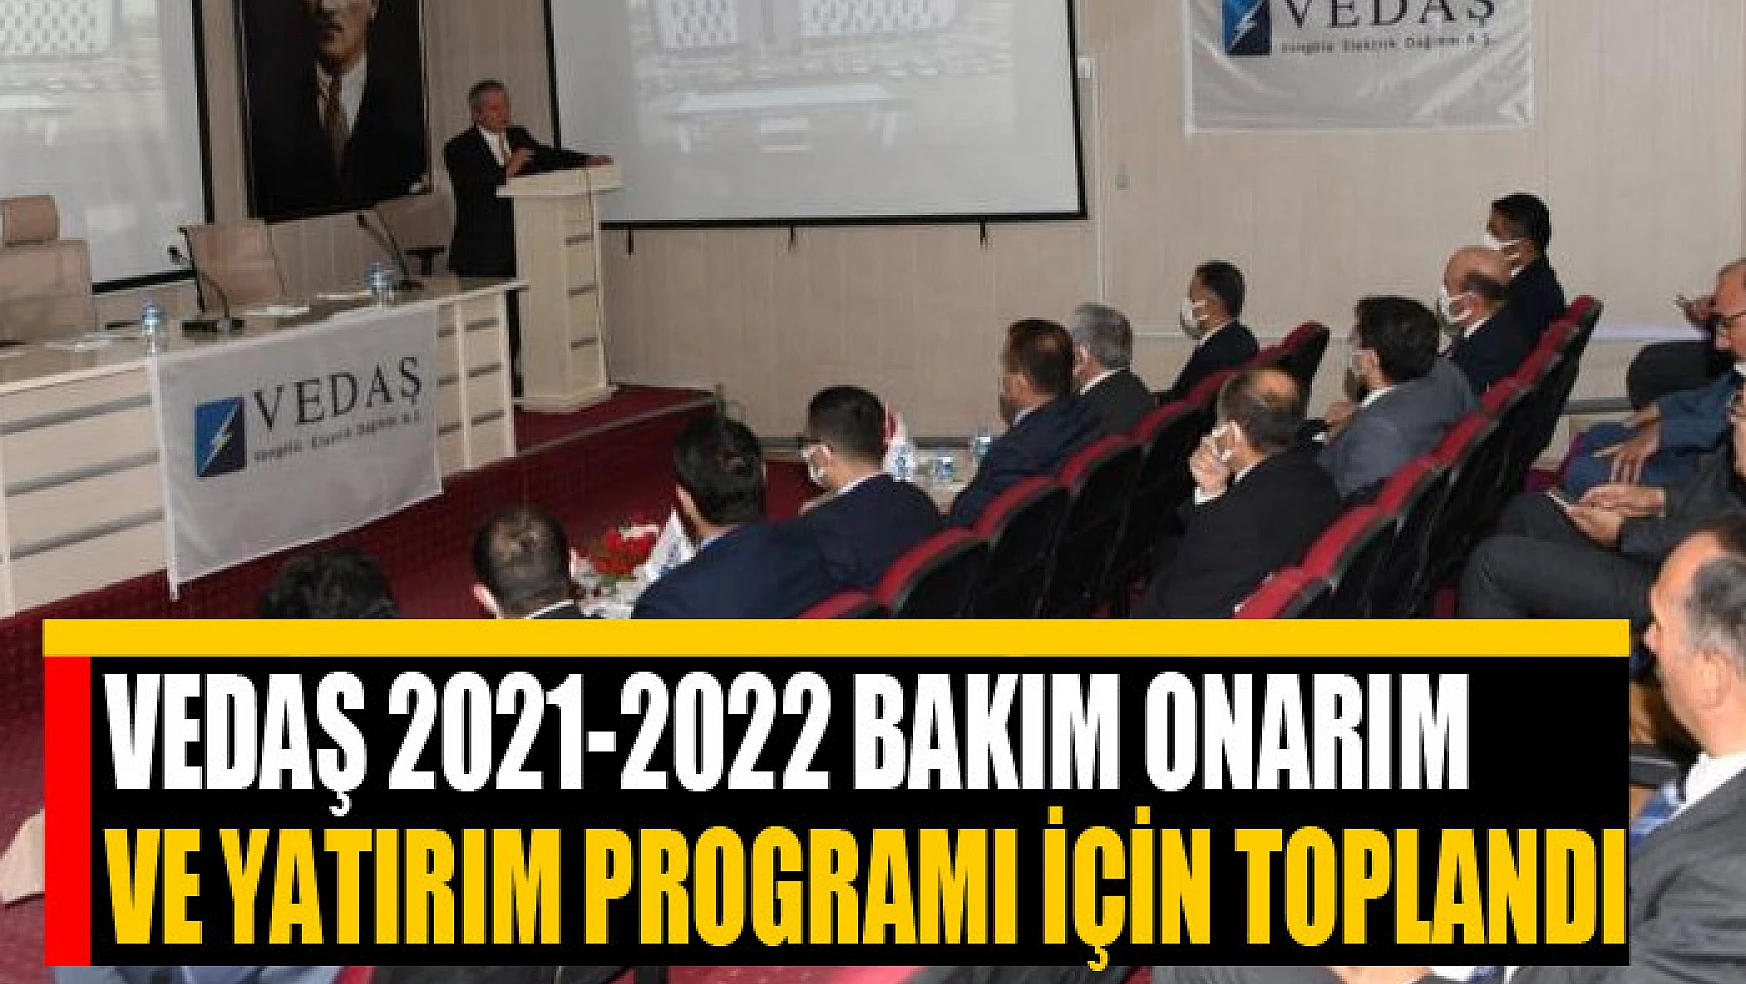 VEDAŞ 2021-2022 Bakım Onarım ve Yatırım Programı için toplandı